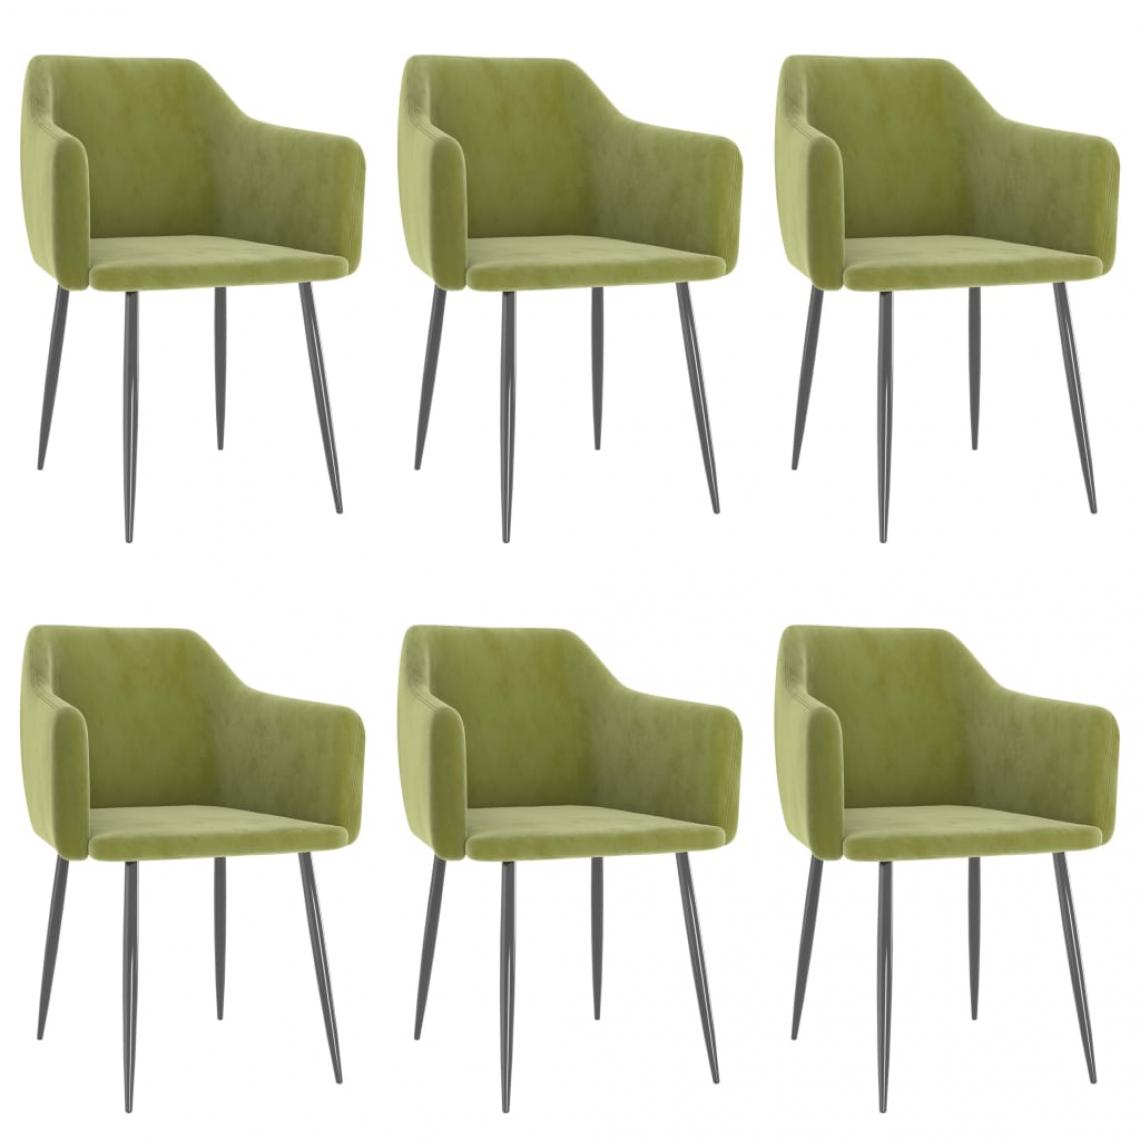 Decoshop26 - Lot de 6 chaises de salle à manger cuisine design moderne velours vert clair CDS022886 - Chaises